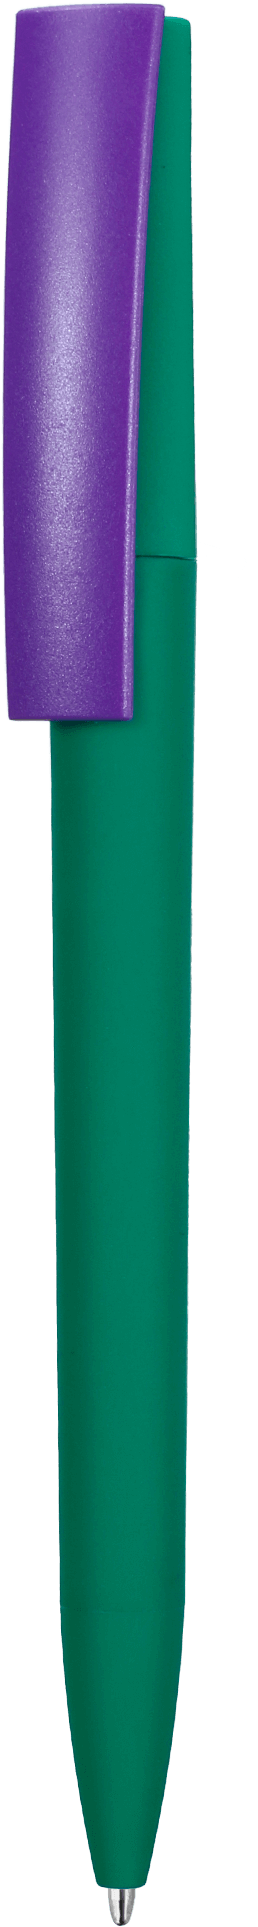 Ручка ZETA SOFT BLUE MIX, зеленая с фиолетовым